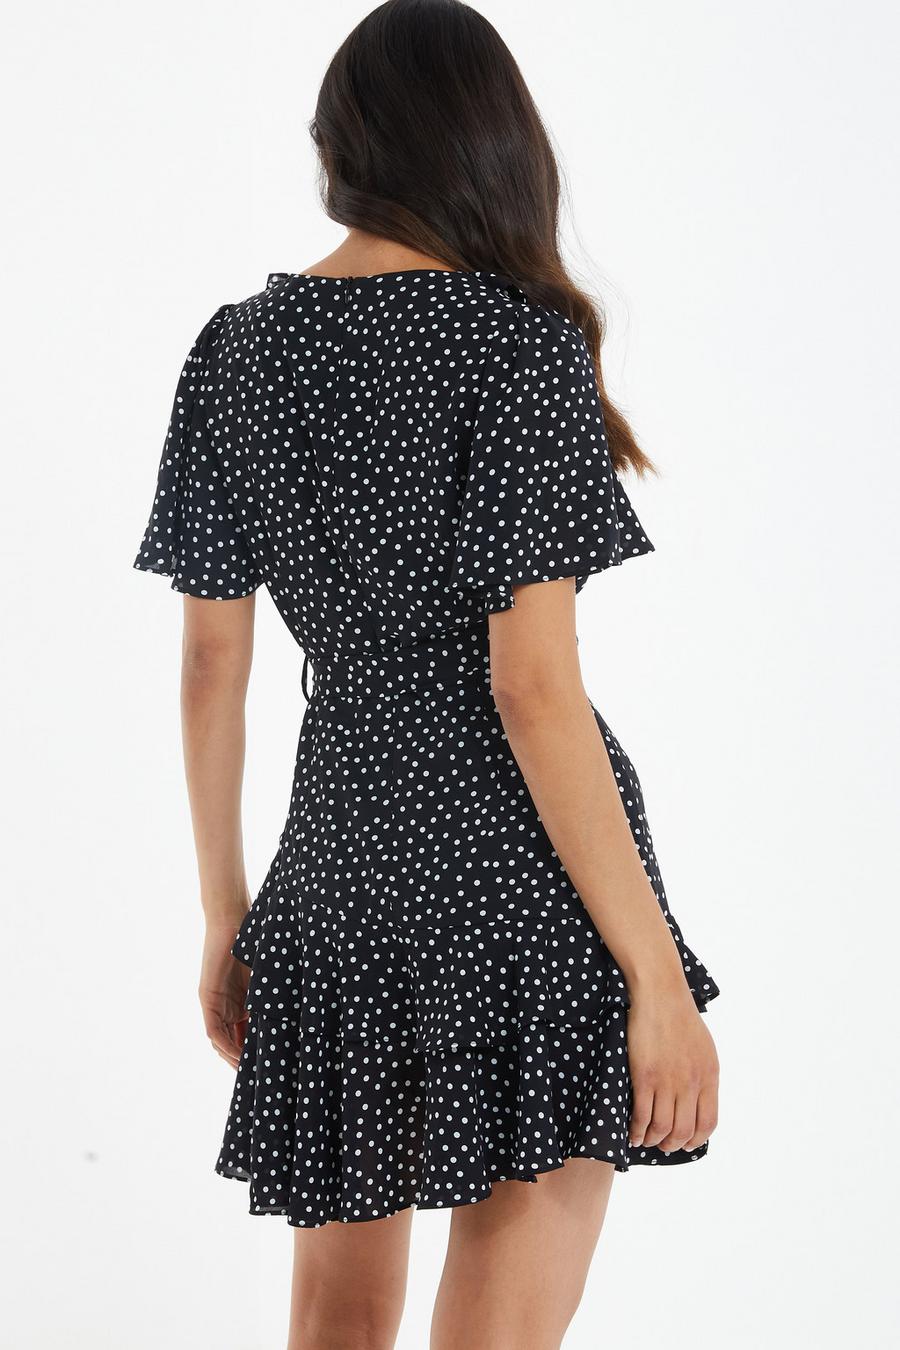 New Look Chiffon Mini Dress in Black Polka Dot